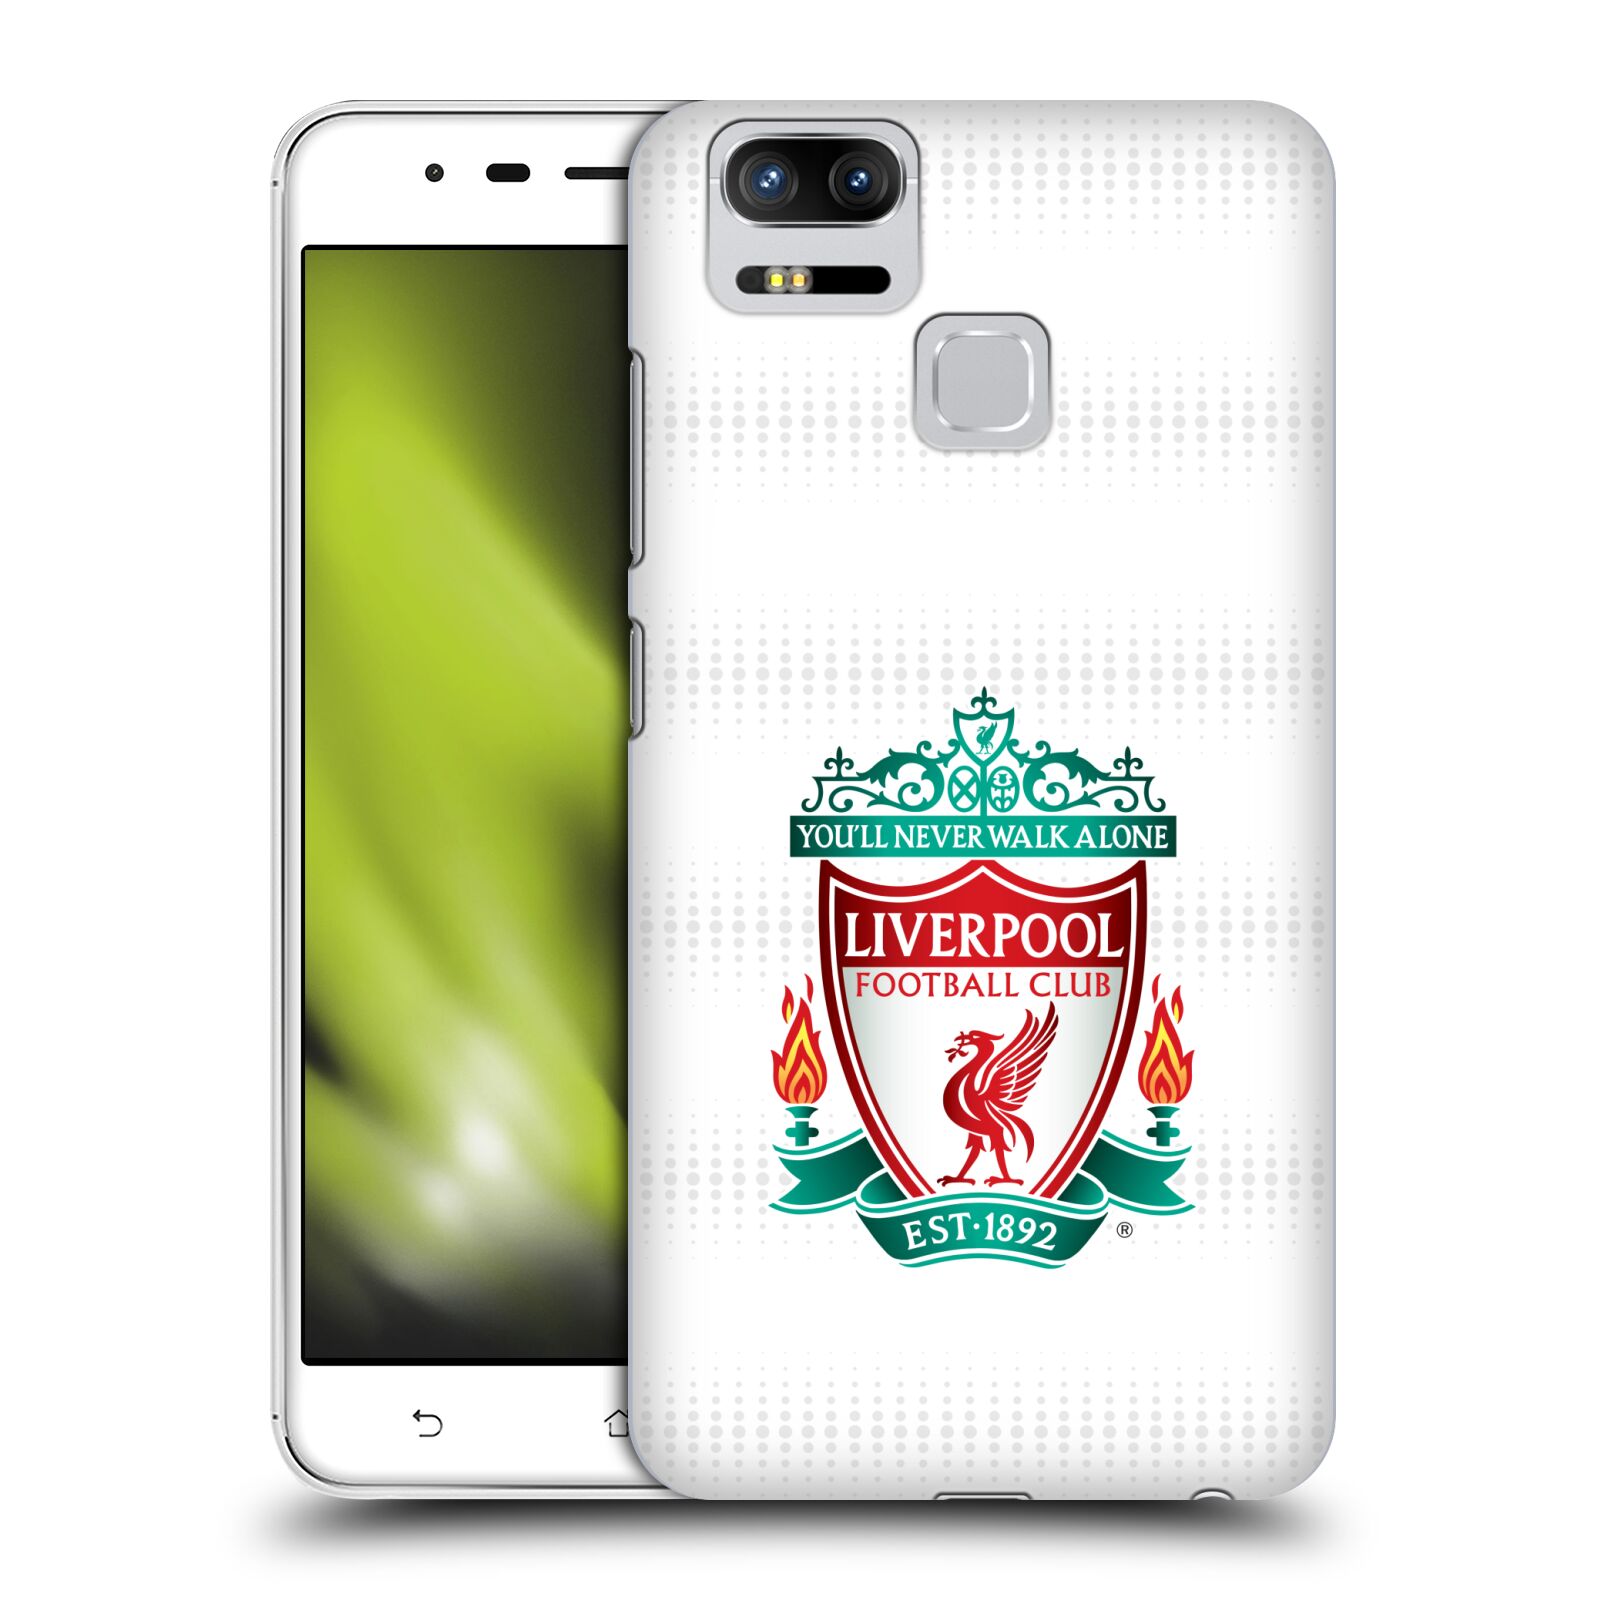 HEAD CASE plastový obal na mobil Asus Zenfone 3 Zoom ZE553KL Fotbalový klub Liverpool barevný znak bílé pozadí s tečkami